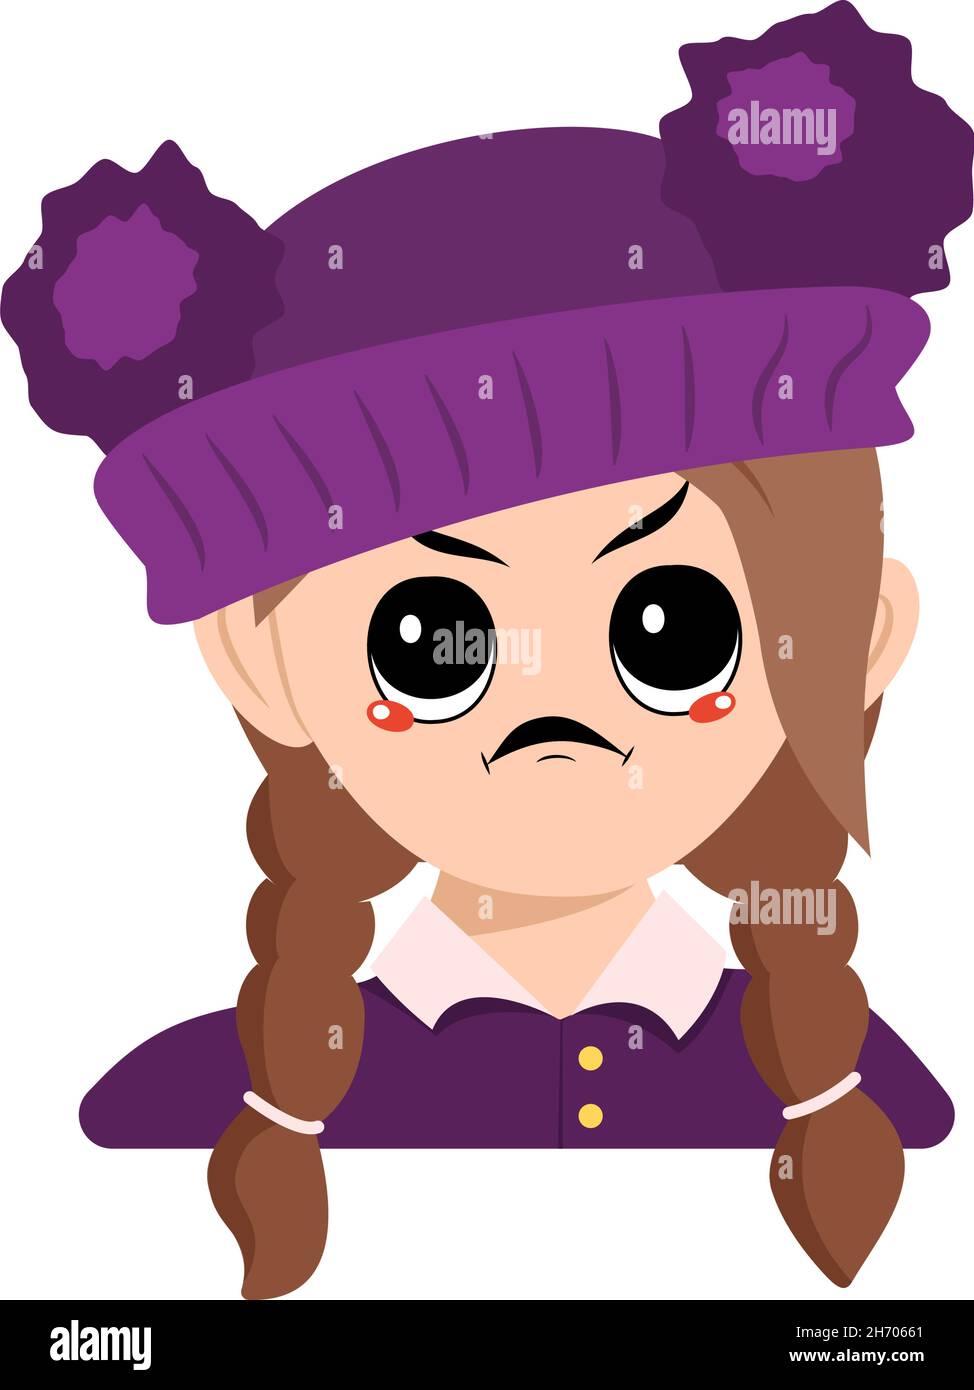 Avatar d'une fille avec des émotions en colère, visage grincheux, yeux furieux en chapeau violet avec pompon.Tête de l'enfant à expression furieuse Illustration de Vecteur